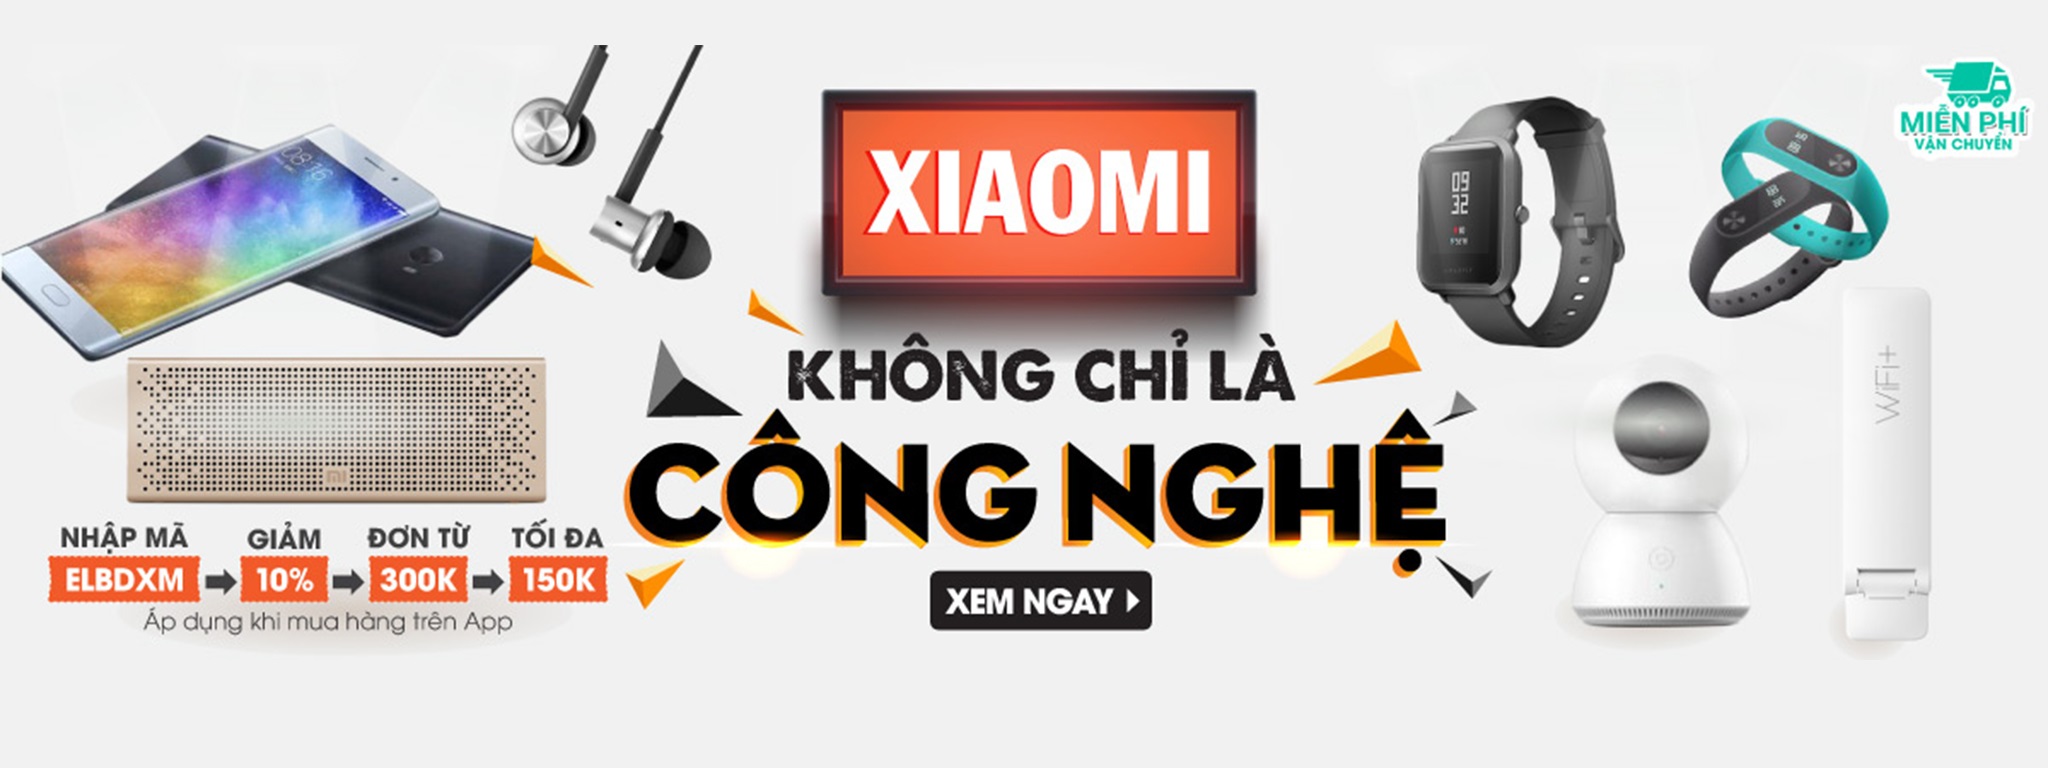 [QC] Ngày hội thương hiệu Xiaomi - Giảm giá đồng loạt các dòng sản phẩm siêu hot